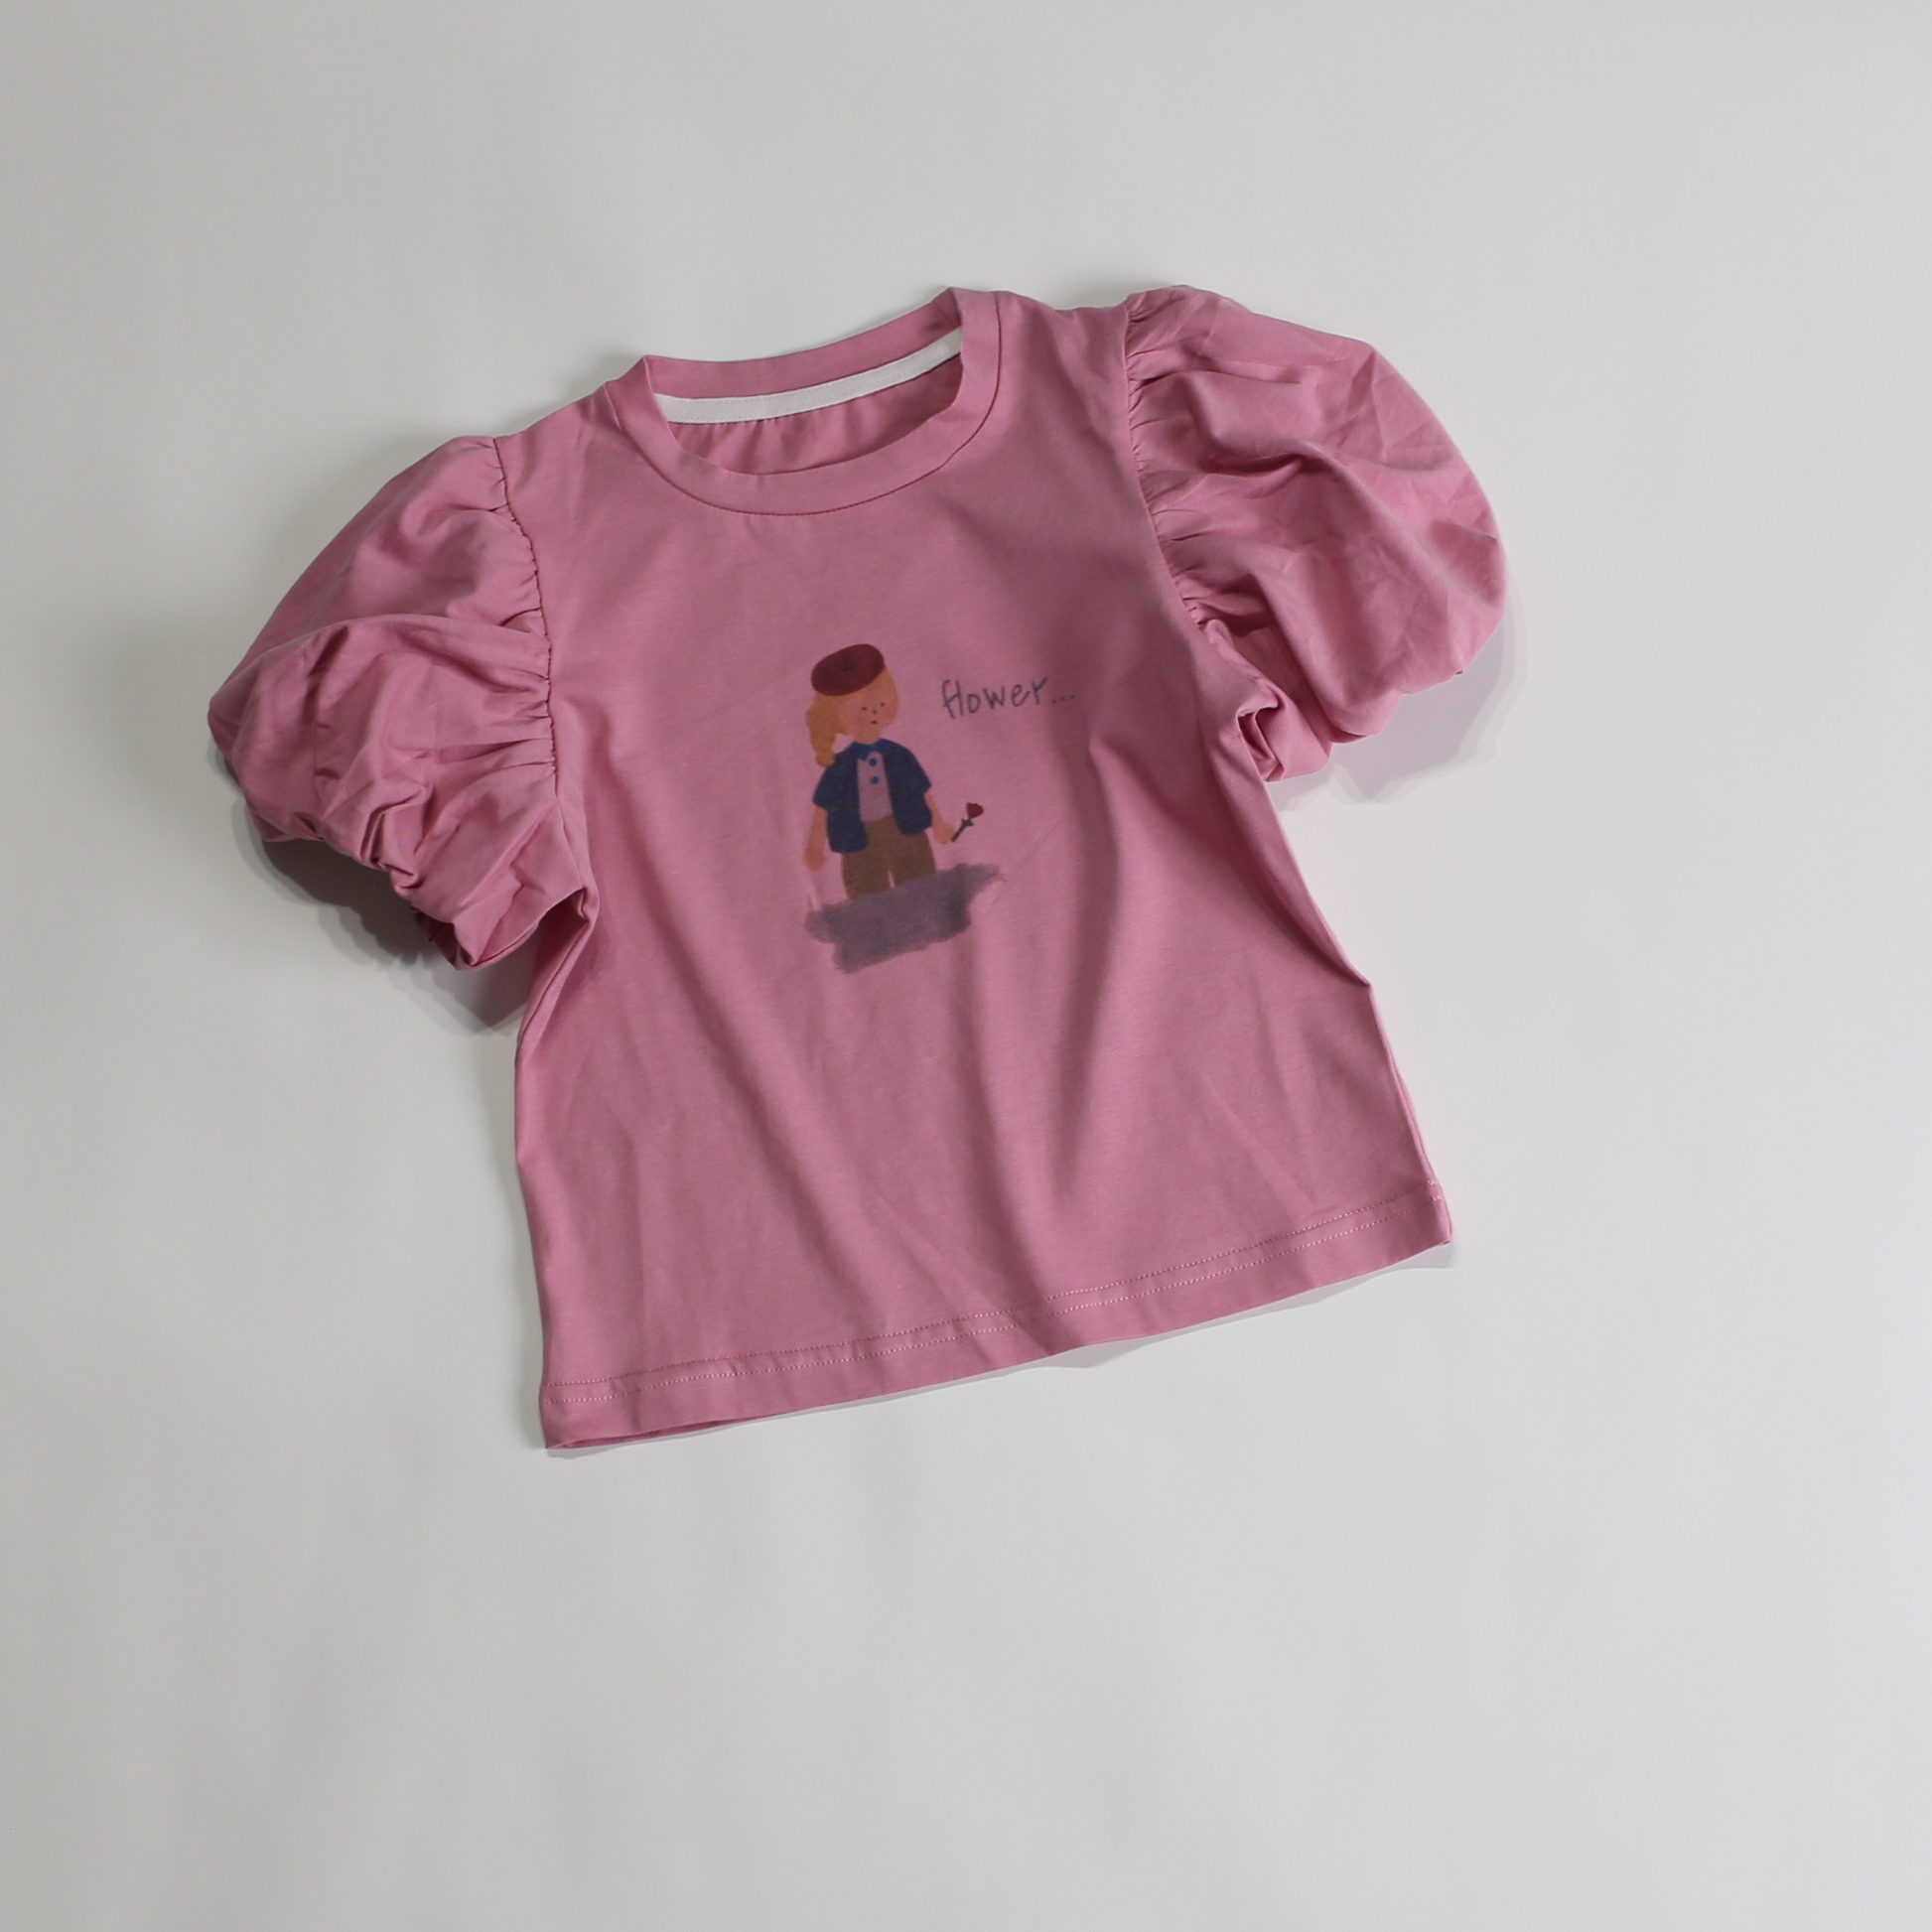 パフスリーブ 女の子プリント Tシャツ / puff sleeve wasing Tee (こども服) - kids clothes shop GUZUGUZU